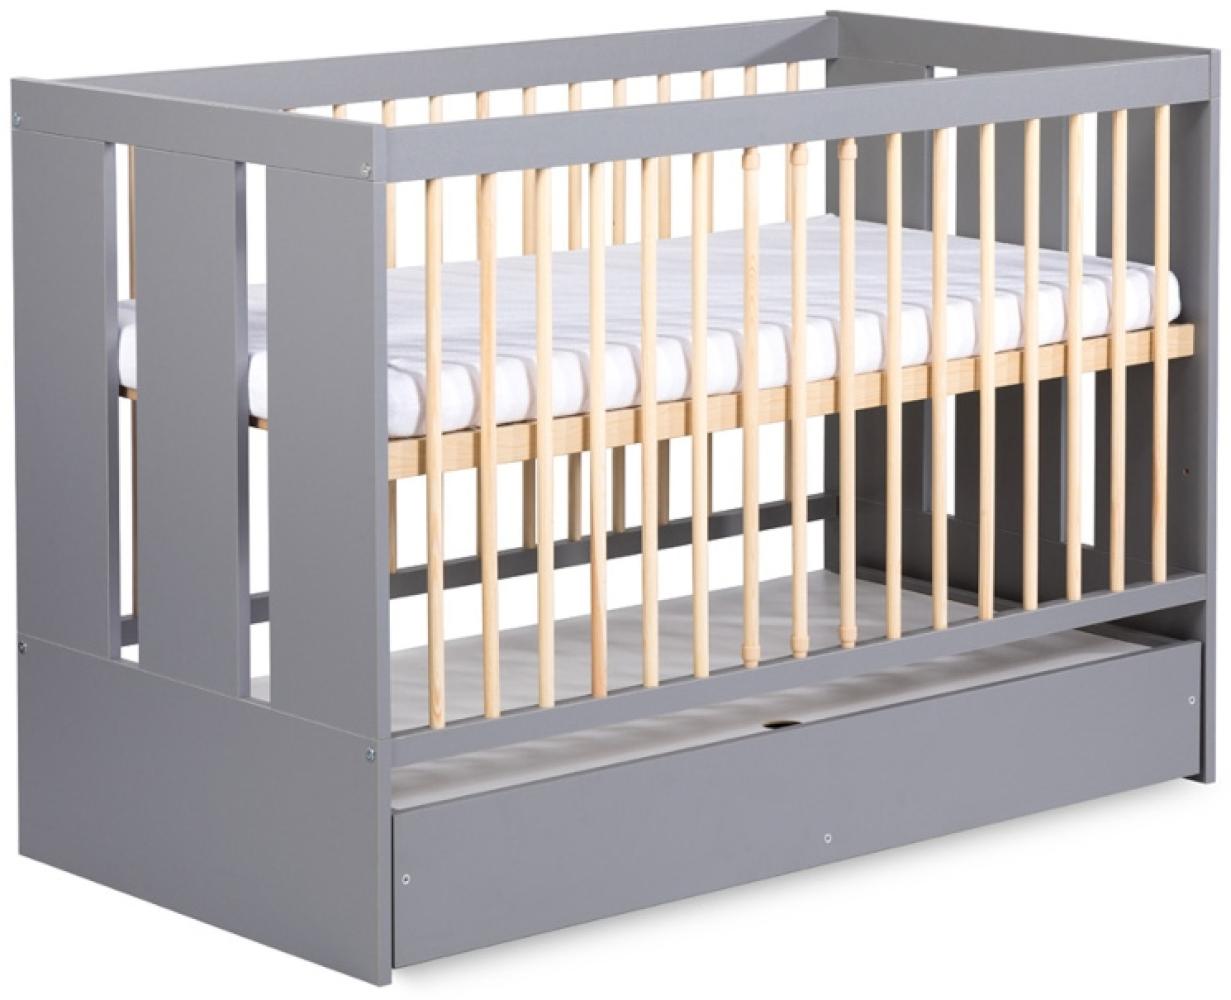 Kinderbett mit Barriere NORBET + Stauraum,124x85x66,grau/Holz Bild 1